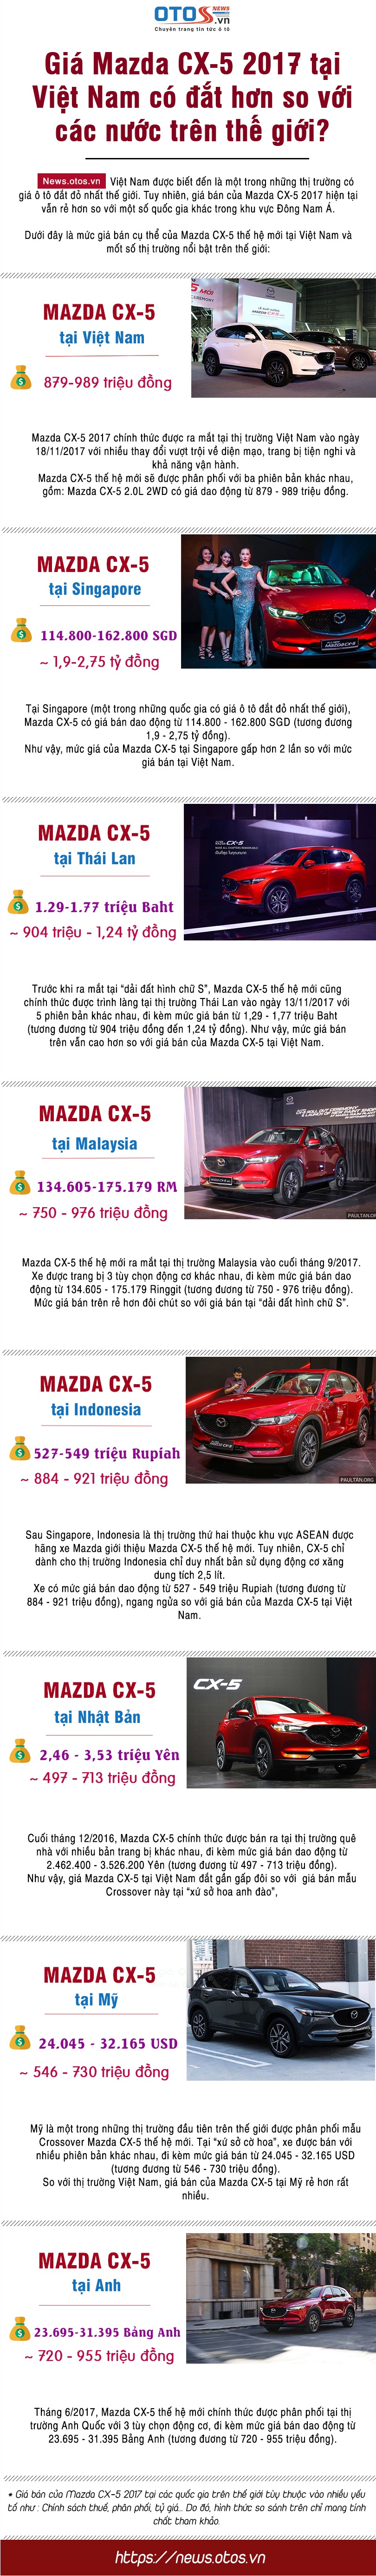 Giá xe Mazda CX-5 2017 có đắt hơn so với các nước trên thế giới?